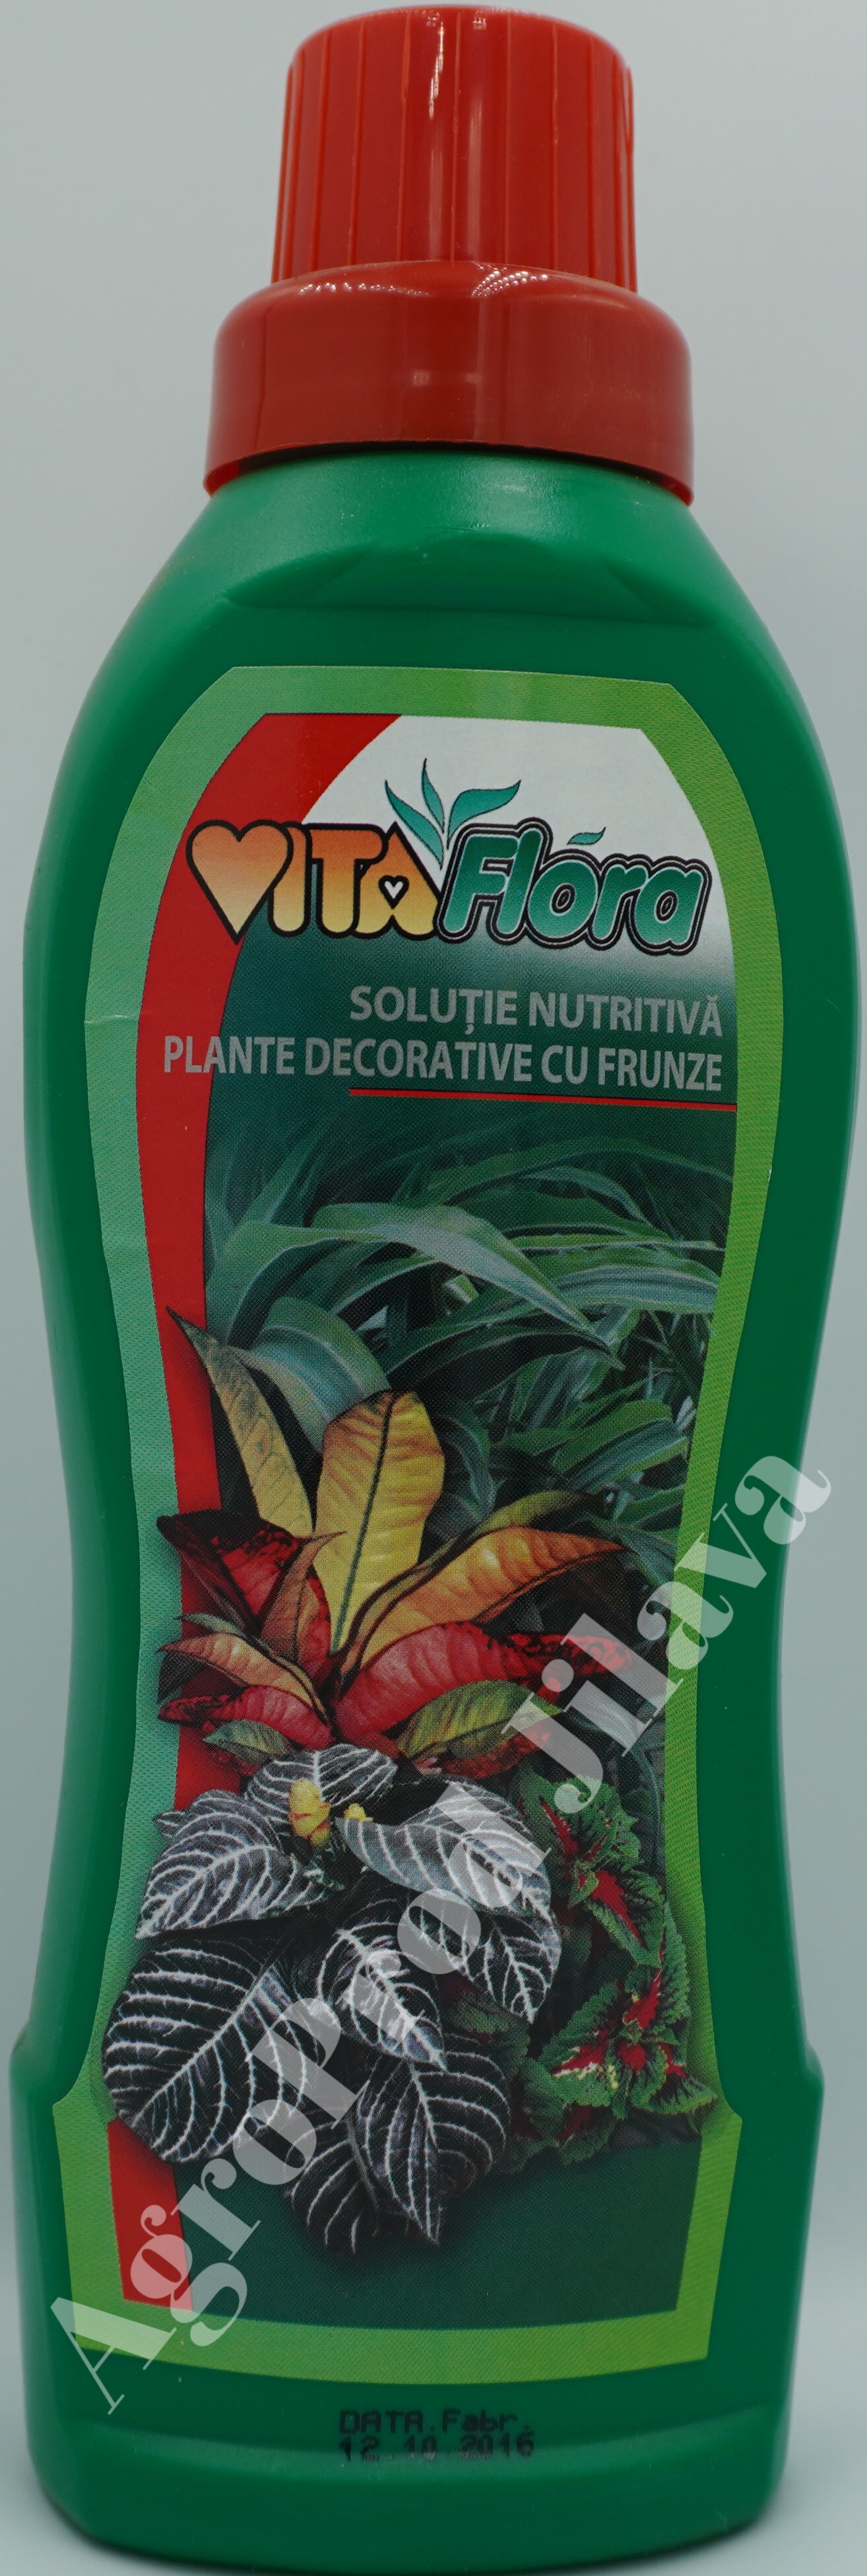 Vitaflora pentru plante cu frunze 1L